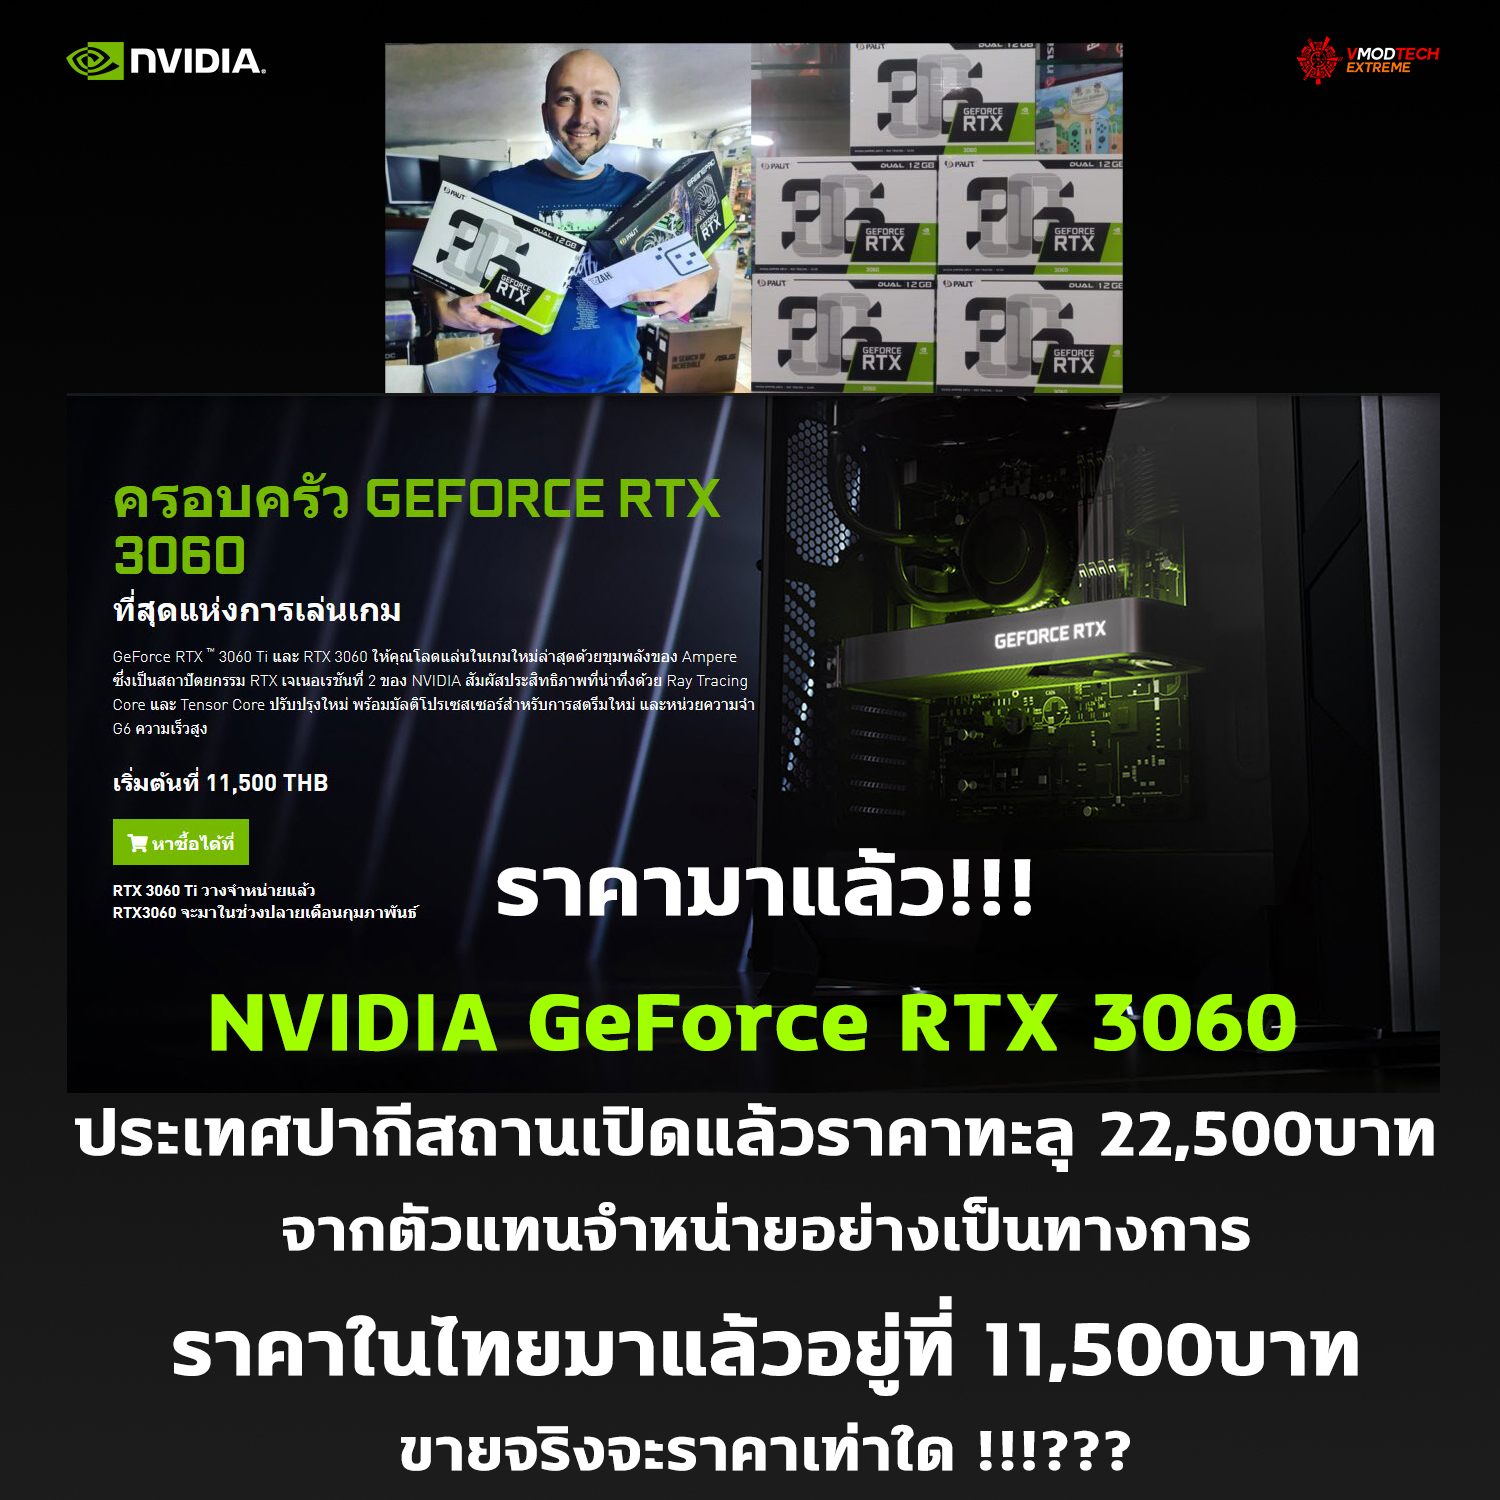 nvidia geforce rtx 3060 price 750usd พบข้อมูลการ์ดจอ NVIDIA GeForce RTX 3060 วางขายในปากีสถานแล้วในราคา 750 USD หรือประมาณ 22,500บาทไทยจากตัวแทนจำหน่ายอย่างเป็นทางการ